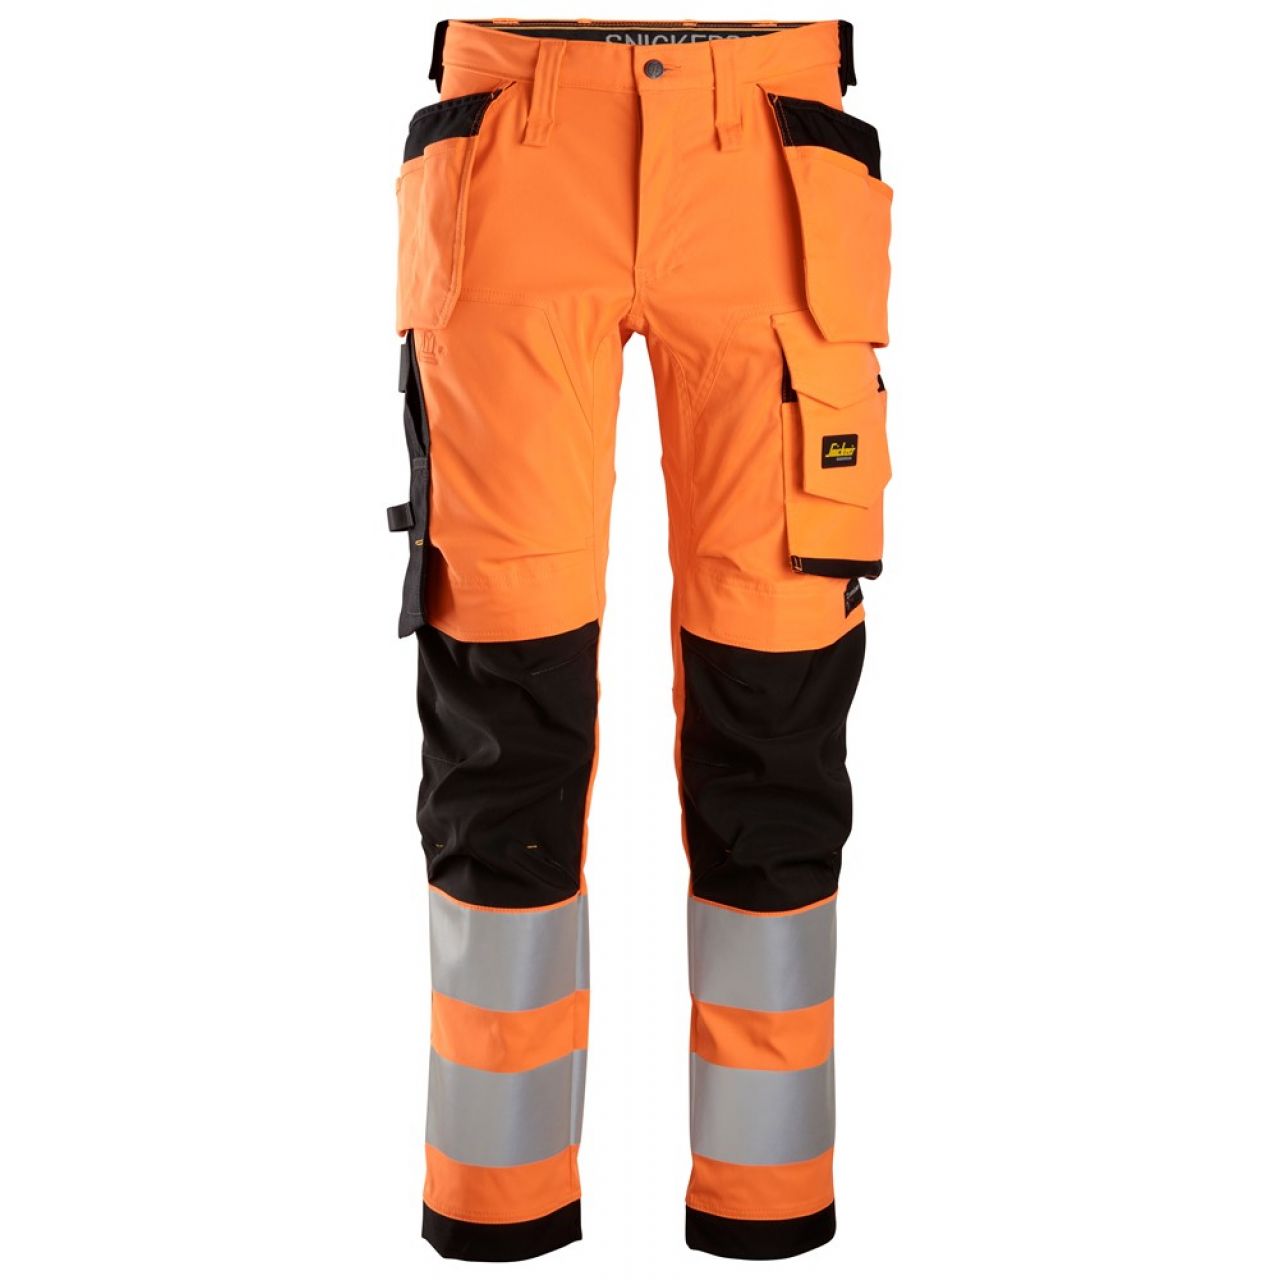 6243 Pantalones largos de trabajo elásticos de alta visibilidad clase 2 con bolsillos flotantes naranja-negro talla 44